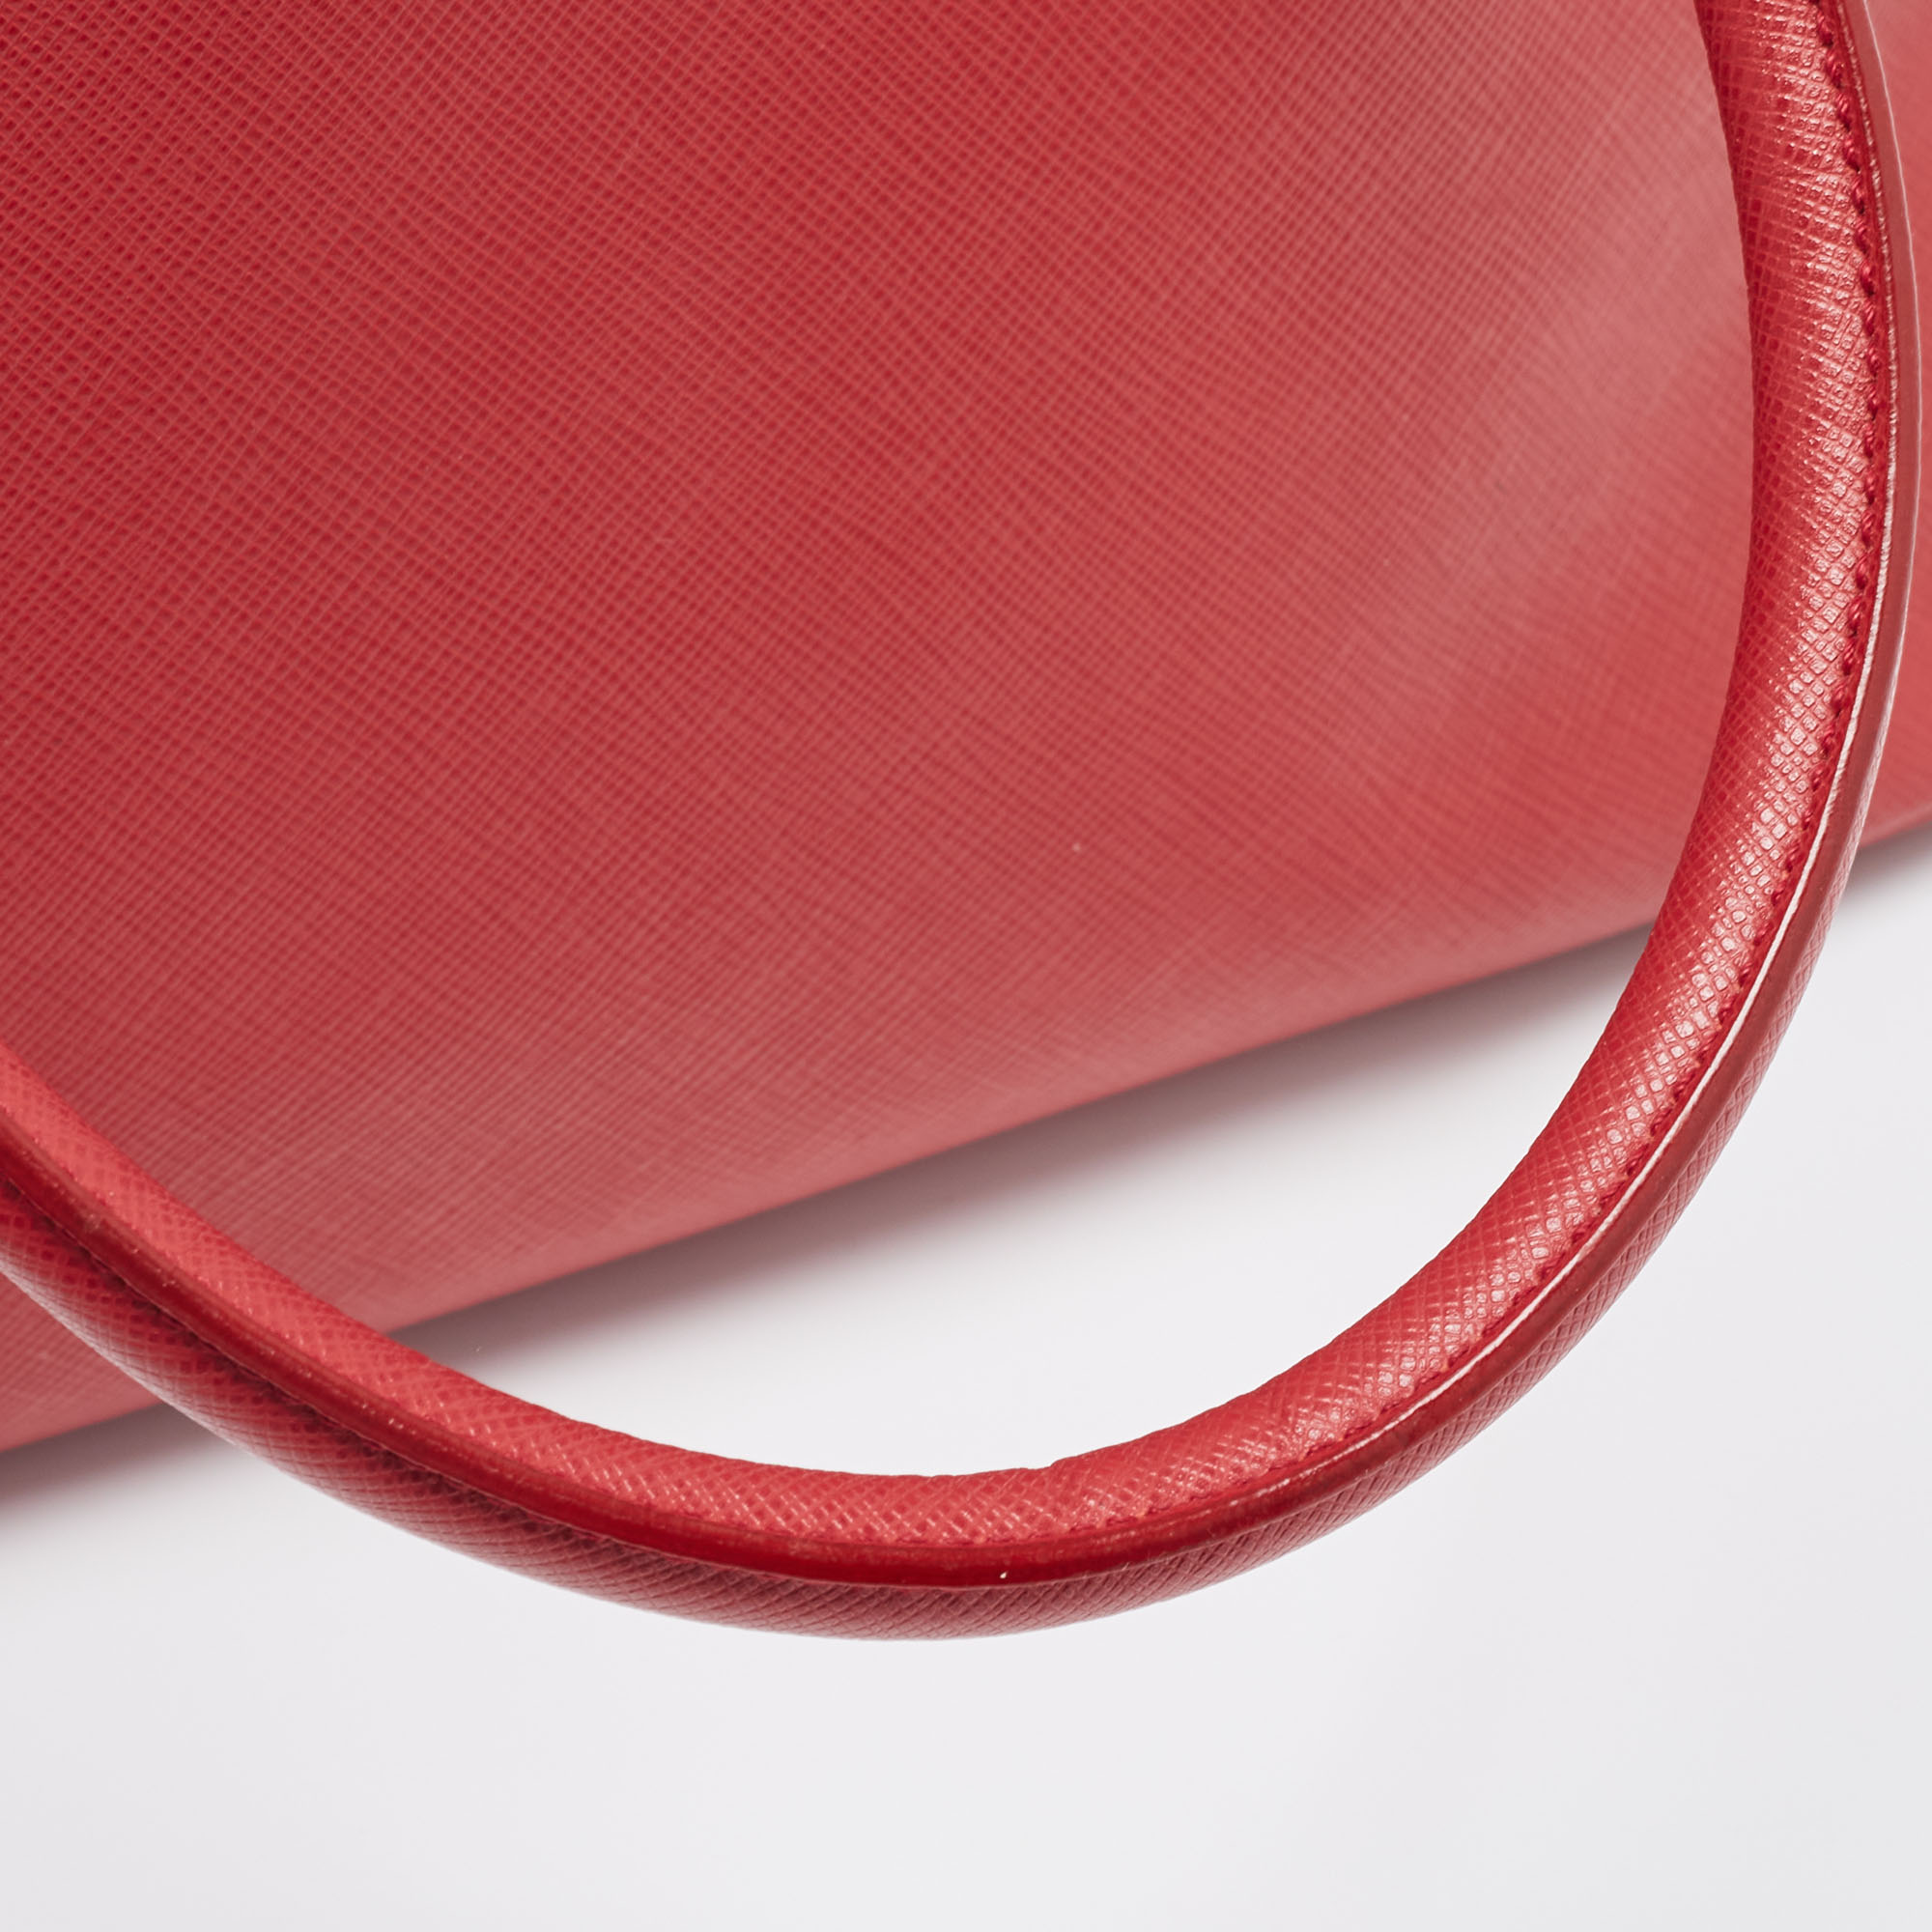 Prada Red Leather Medium Galleria Tote Bag